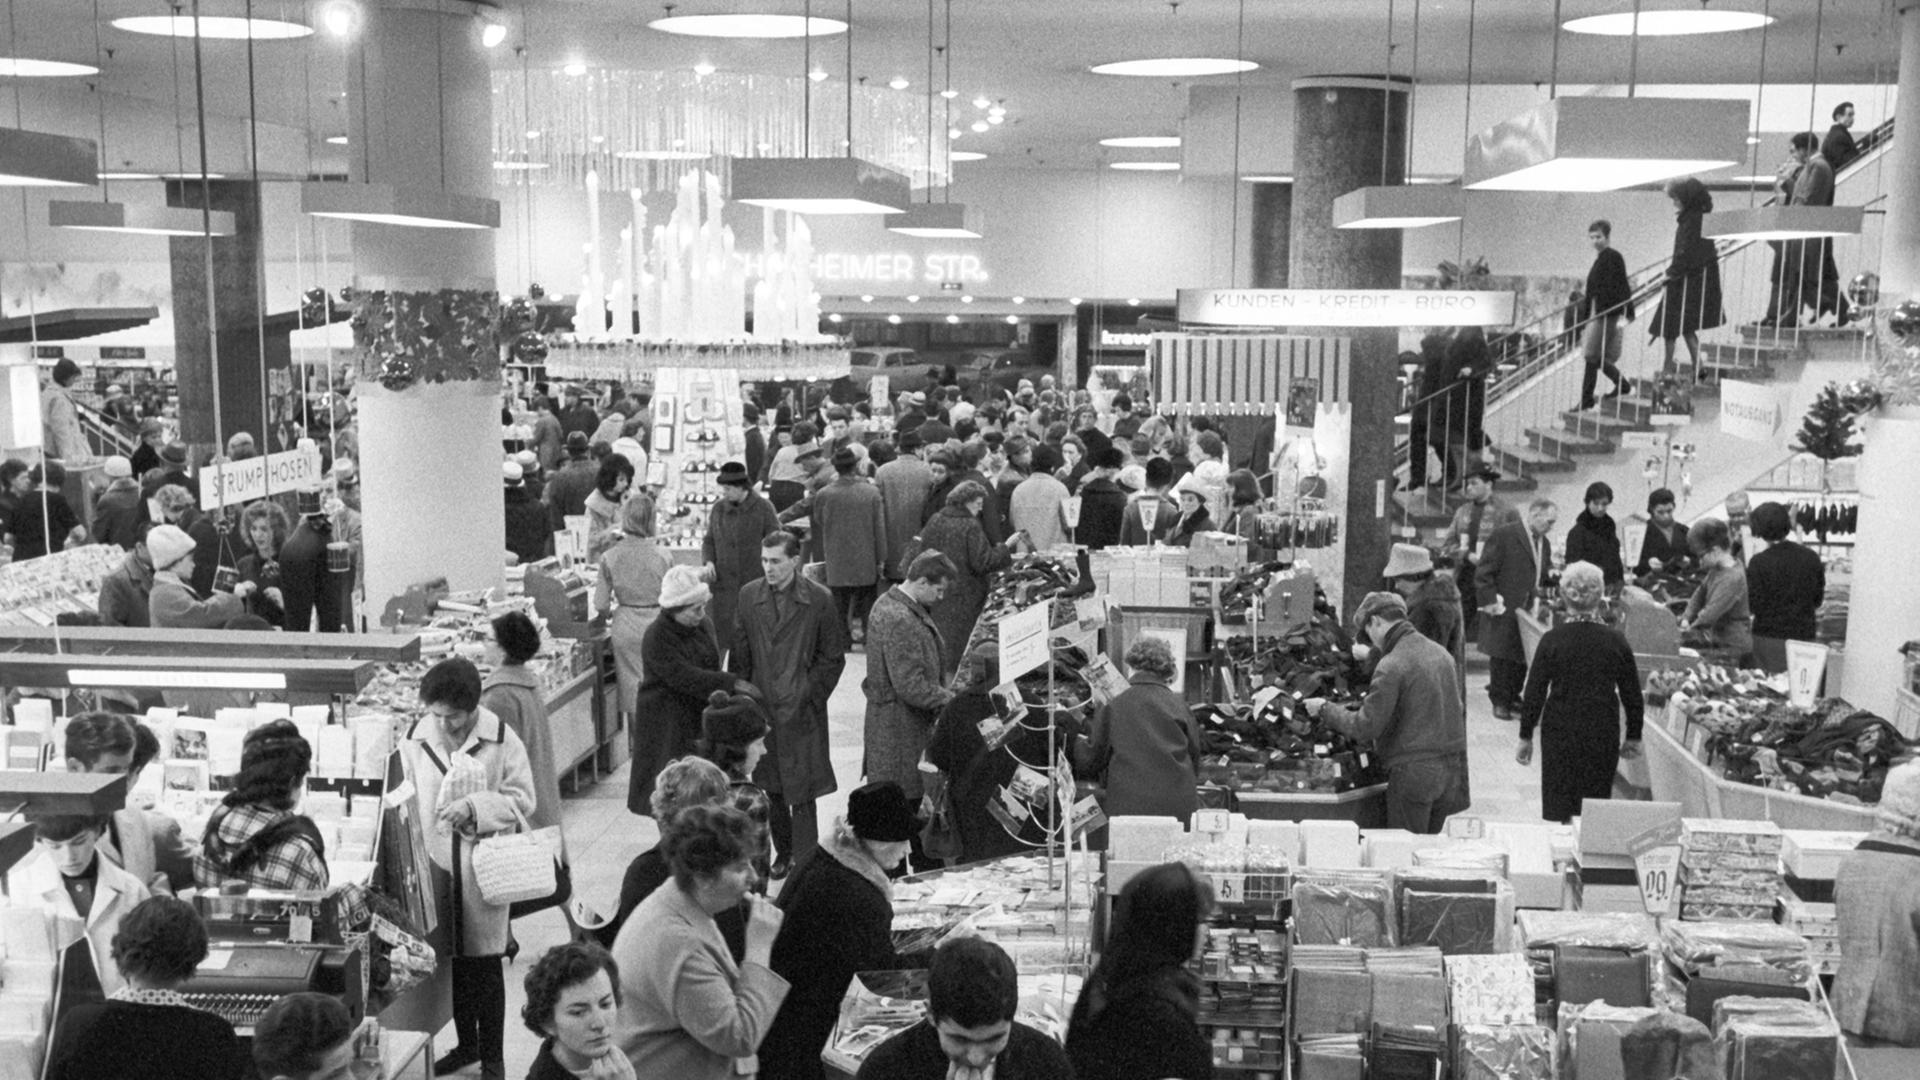 Blick in ein Frankfurter Kaufhaus am 3.12.1963, Schwarz-Weiß-Aufnahme, Menschen stehen an Kassen und Verkaufsständen